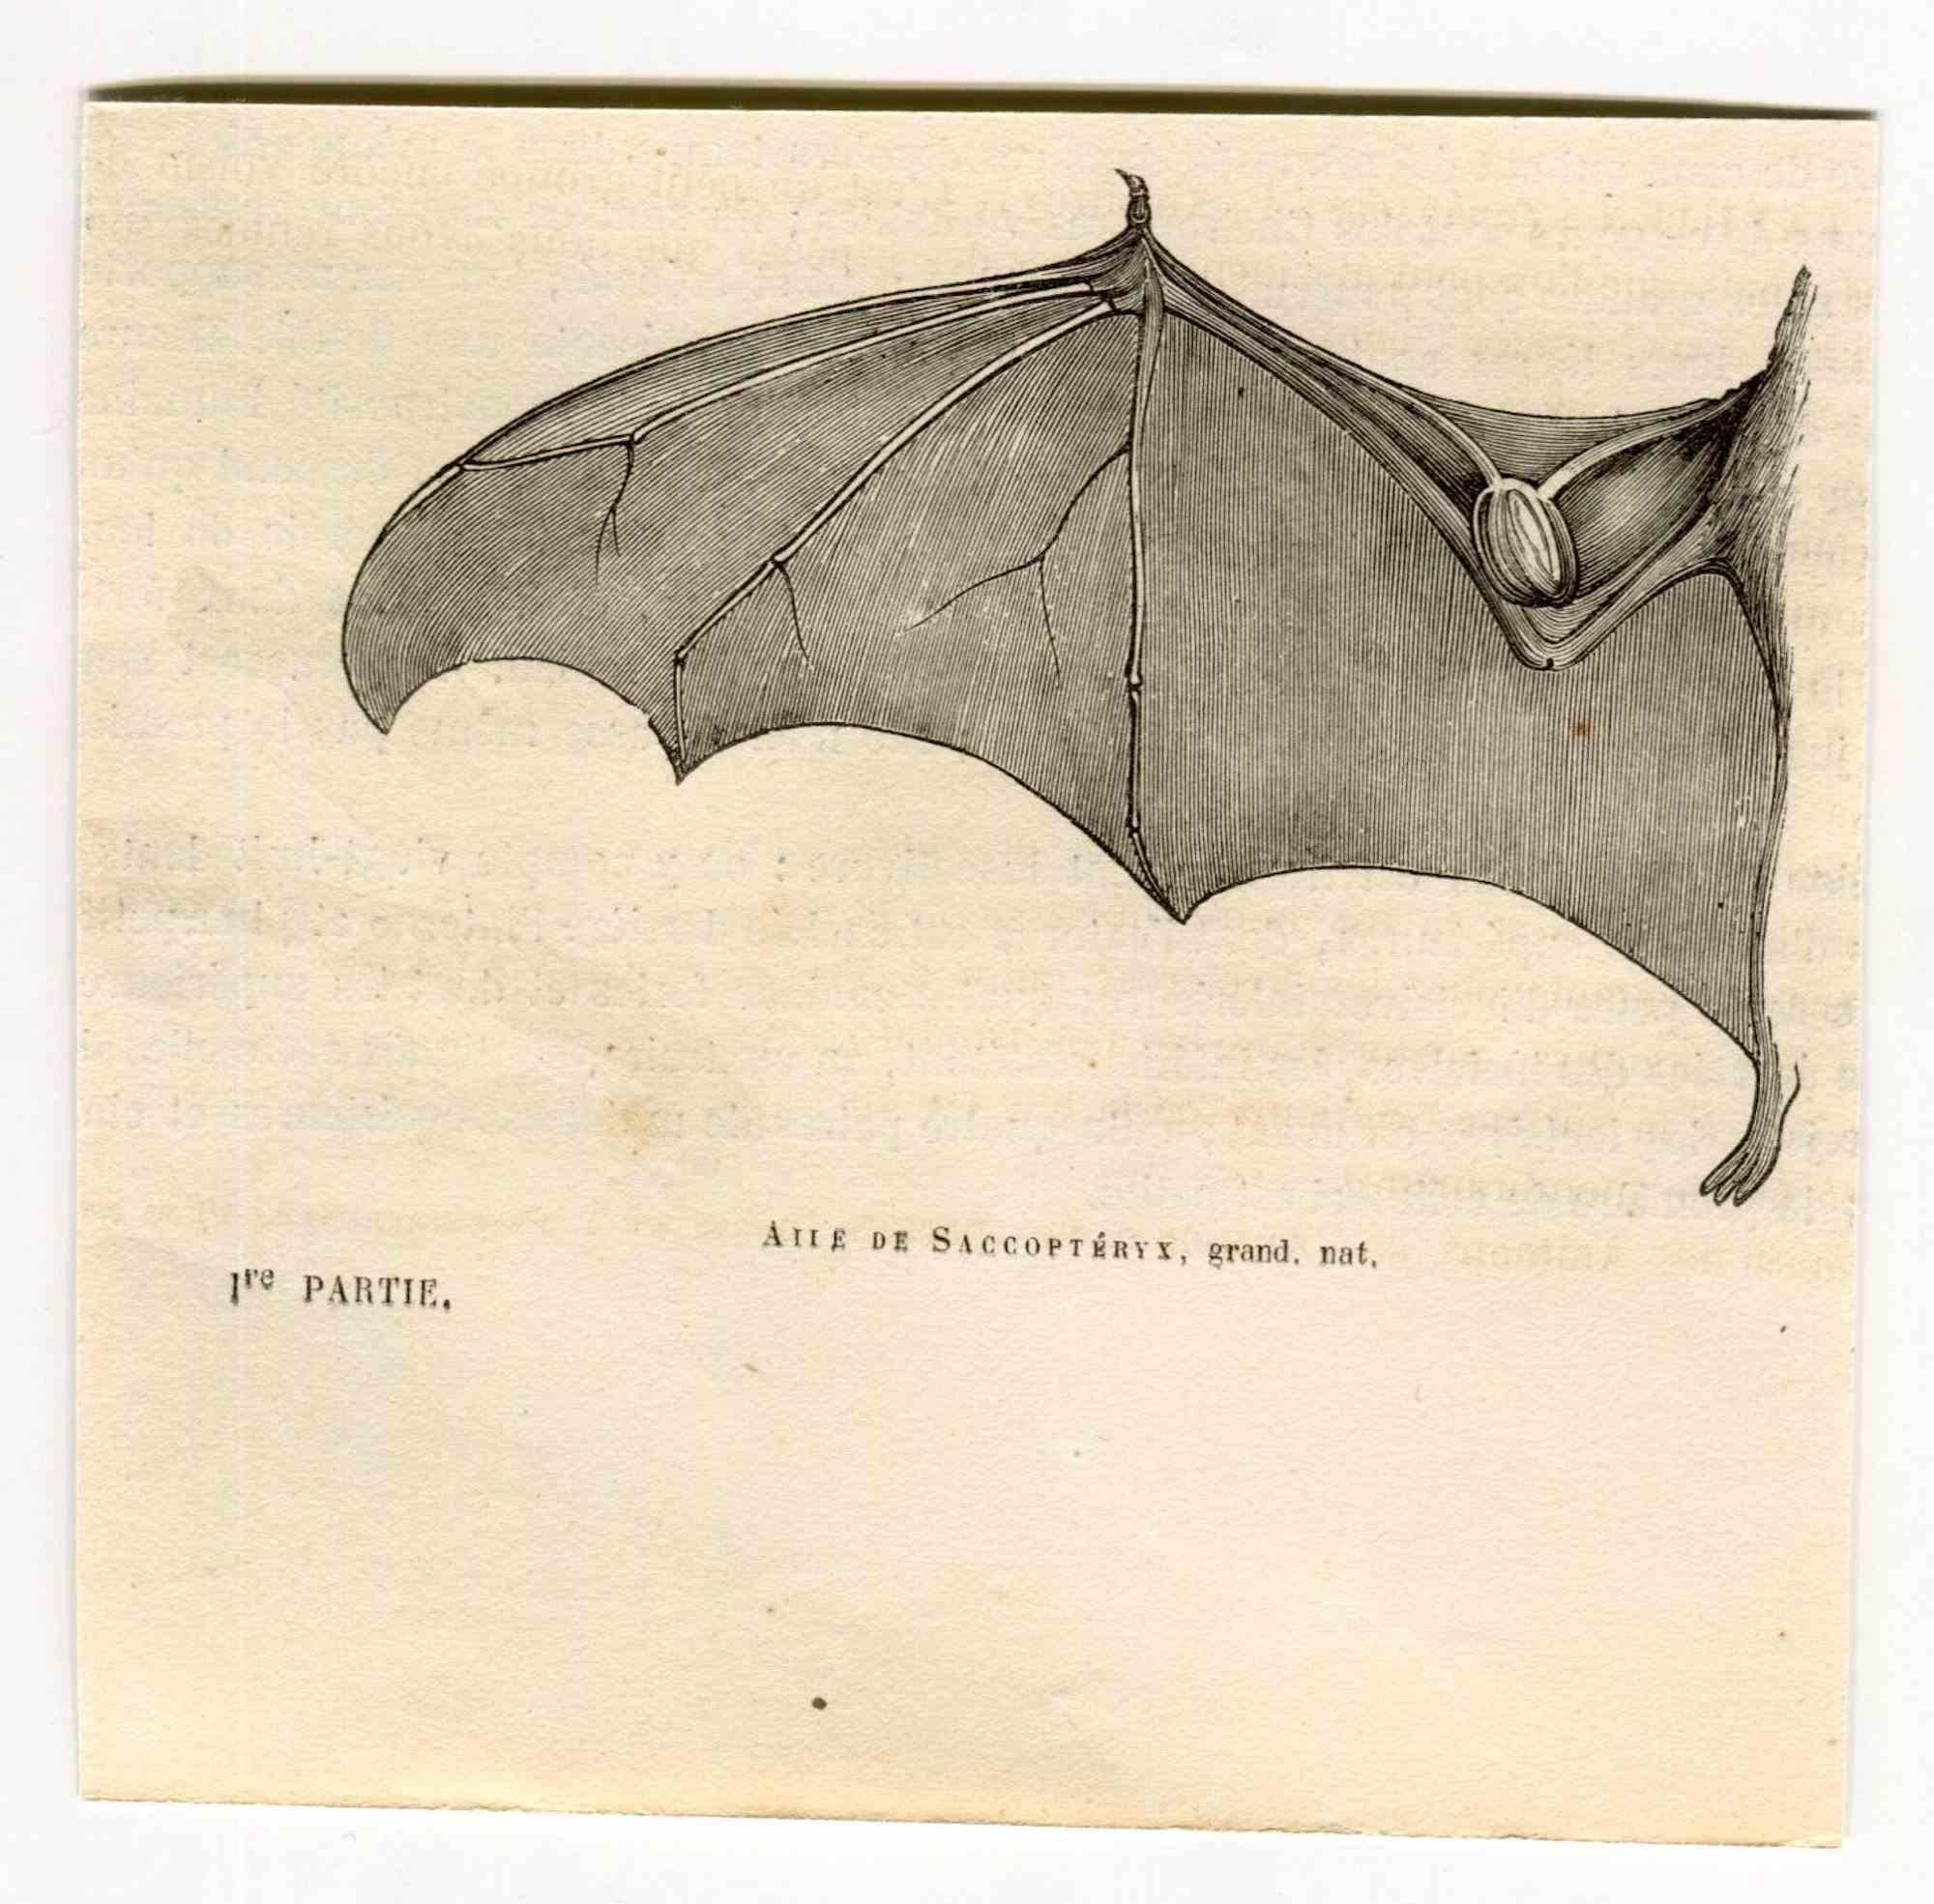 Saccoptery's Wing ist eine Originallithografie auf elfenbeinfarbenem Papier, die von Paul Gervais (1816-1879) realisiert wurde. Das Kunstwerk stammt aus der Serie "Les Trois Règnes de la Nature" und wurde 1854 veröffentlicht.

Gute Bedingungen.

Auf